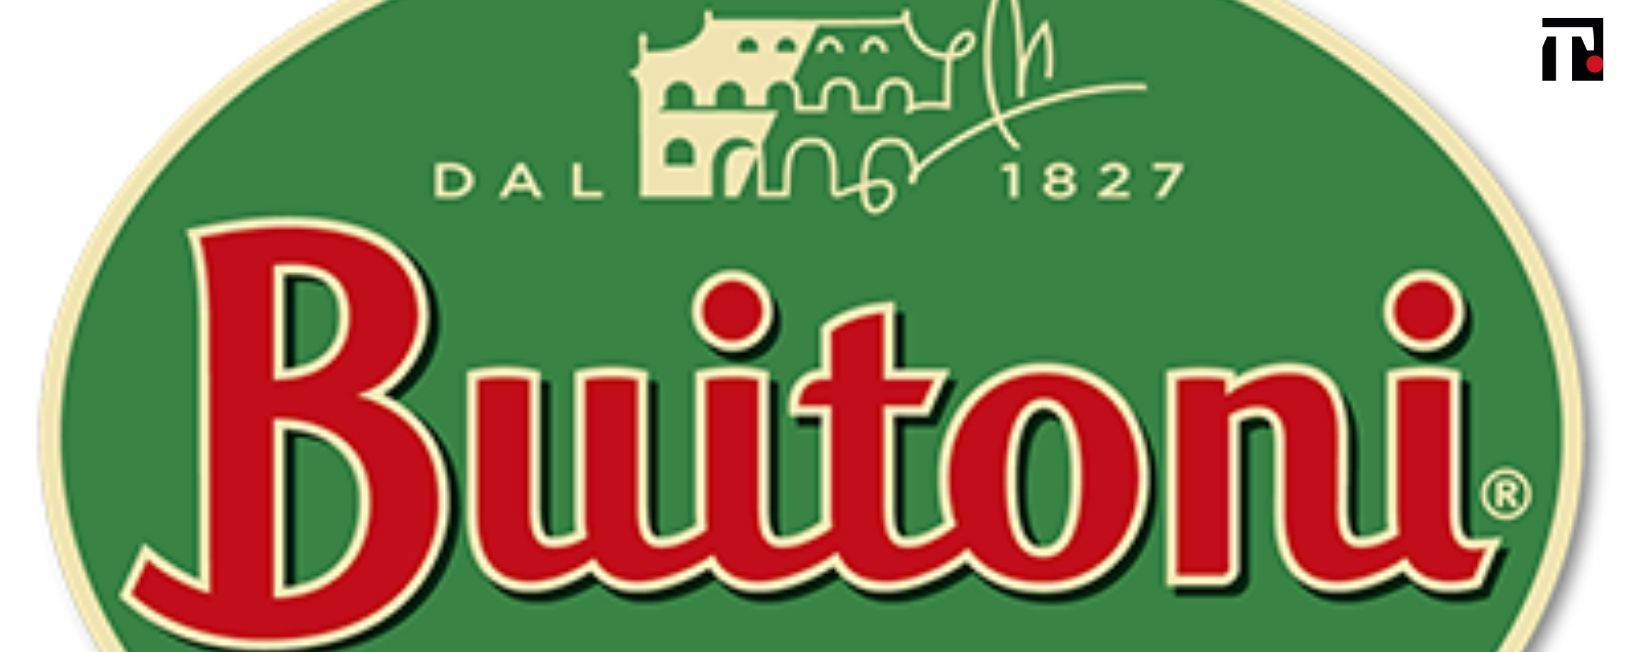 Addio al marchio Buitoni